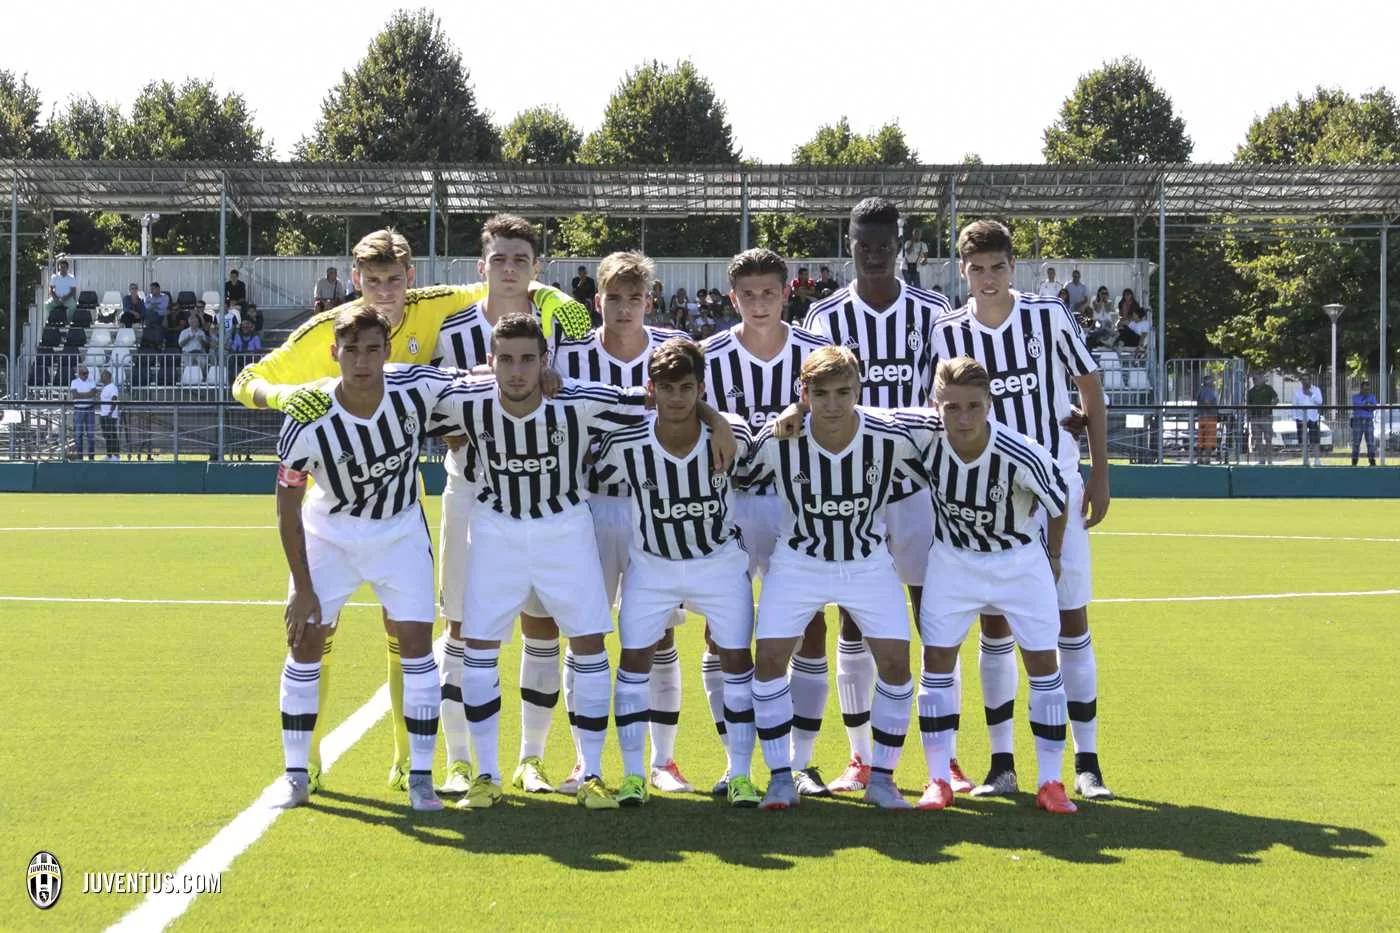 GALLERY – I 5 ragazzi più promettenti dell’Under 17 della Juventus